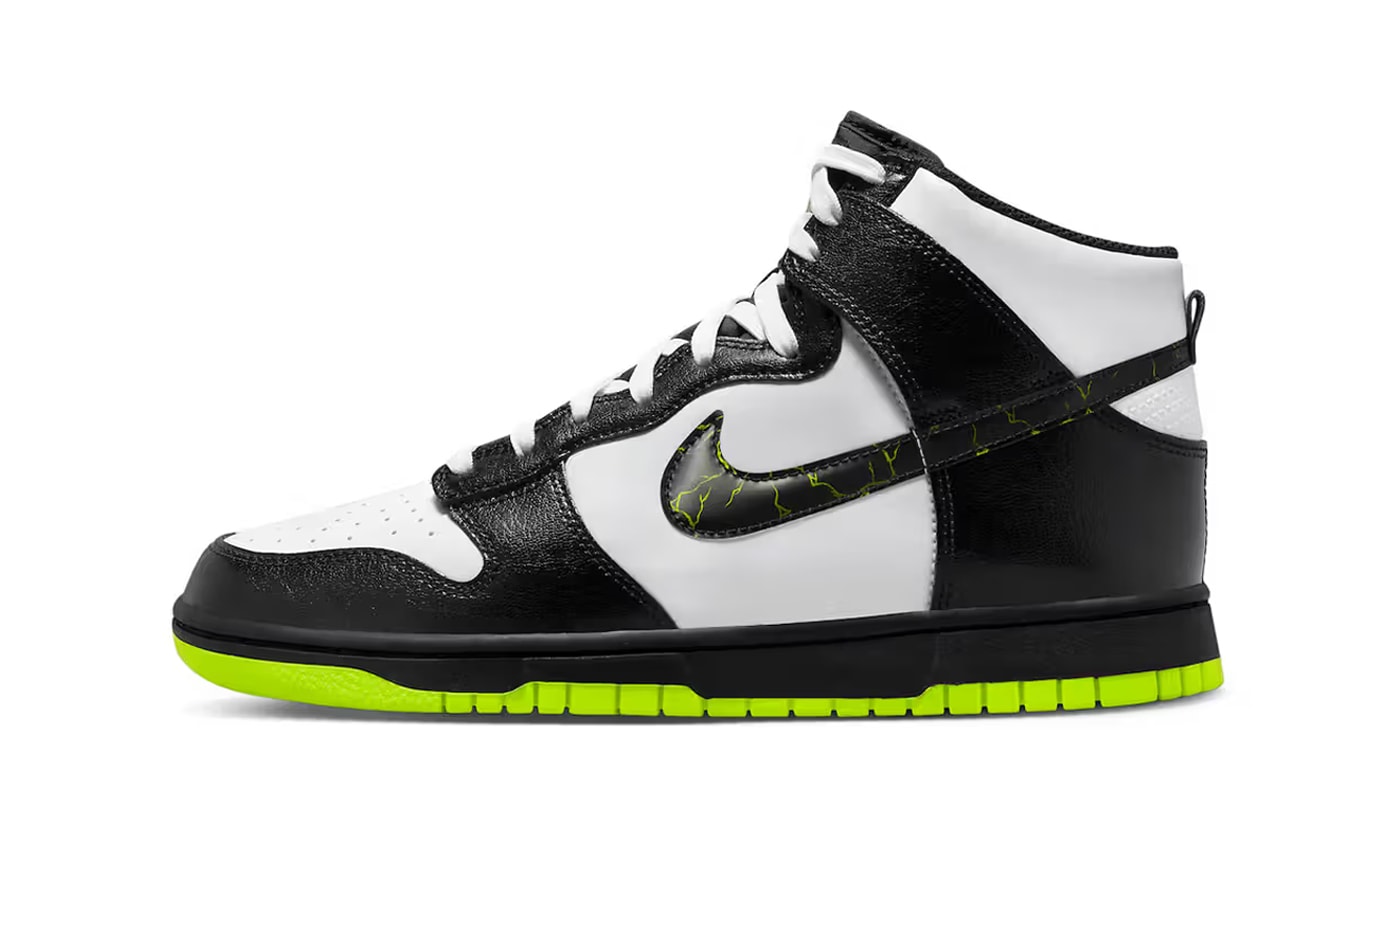 Nike Dunk High "Electric" FD0732-100 Информация о выпуске подробности дата обувь кроссовки panda hype colorway